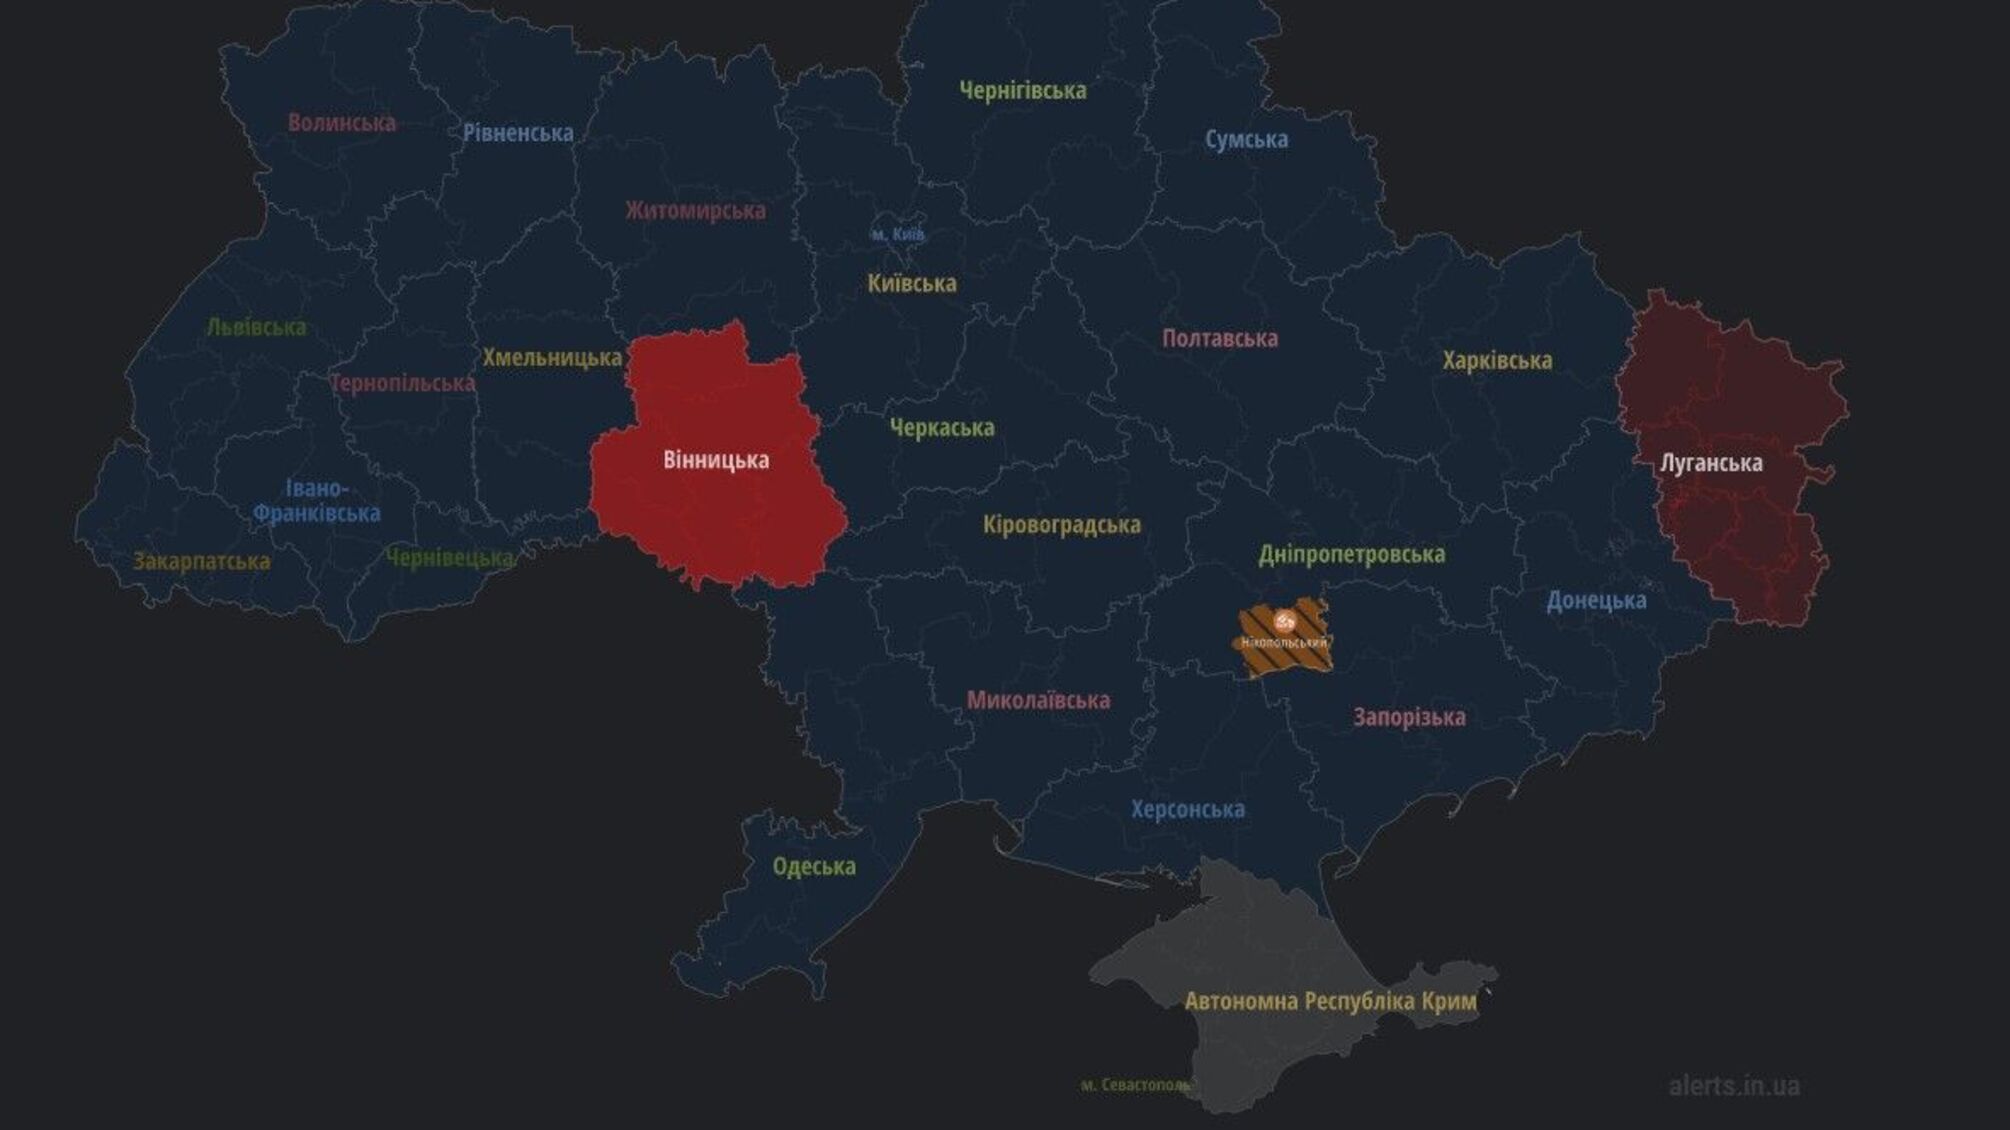 В Винницкой области произошли взрывы (обновление – видео с пролетом ракеты)